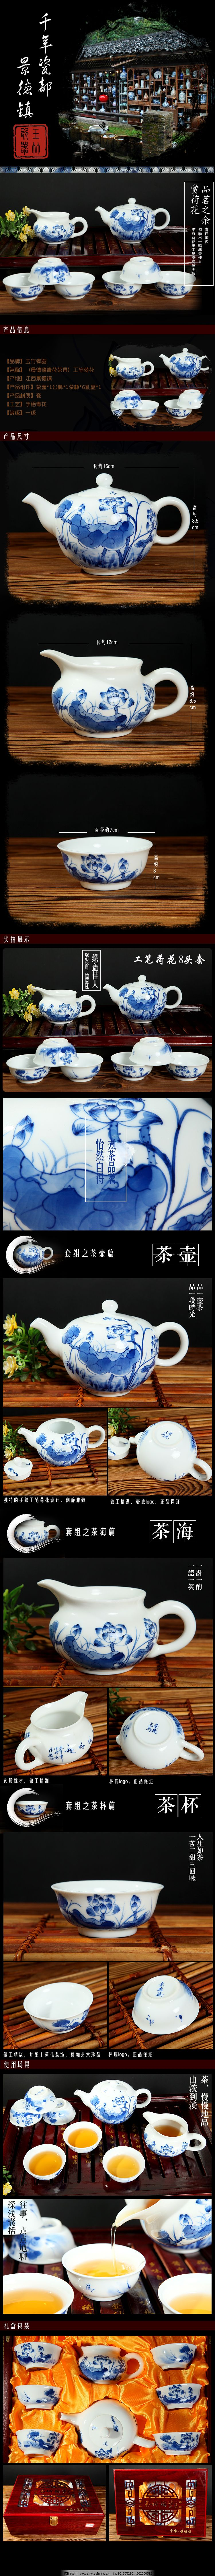 景德镇茶具详情设计免费下载,手绘青花八件套,原创设计,原创淘宝设计